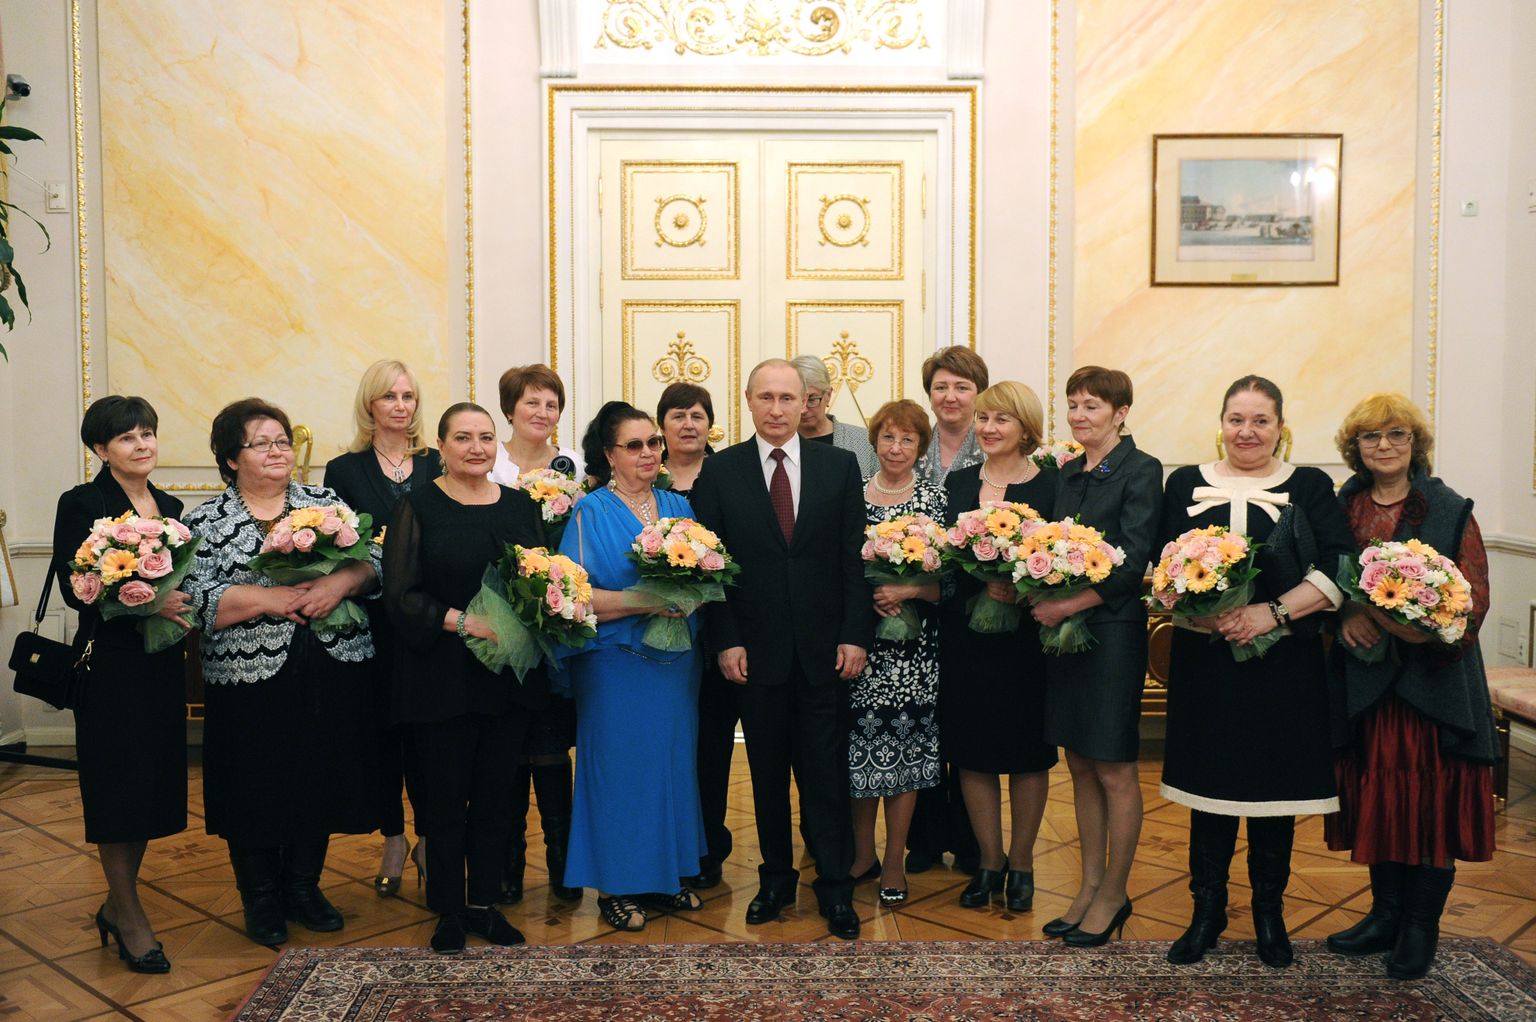 Putini naistepäevakohtumine daamidega, kus paistab selgelt välja riigipea lühike kasv.